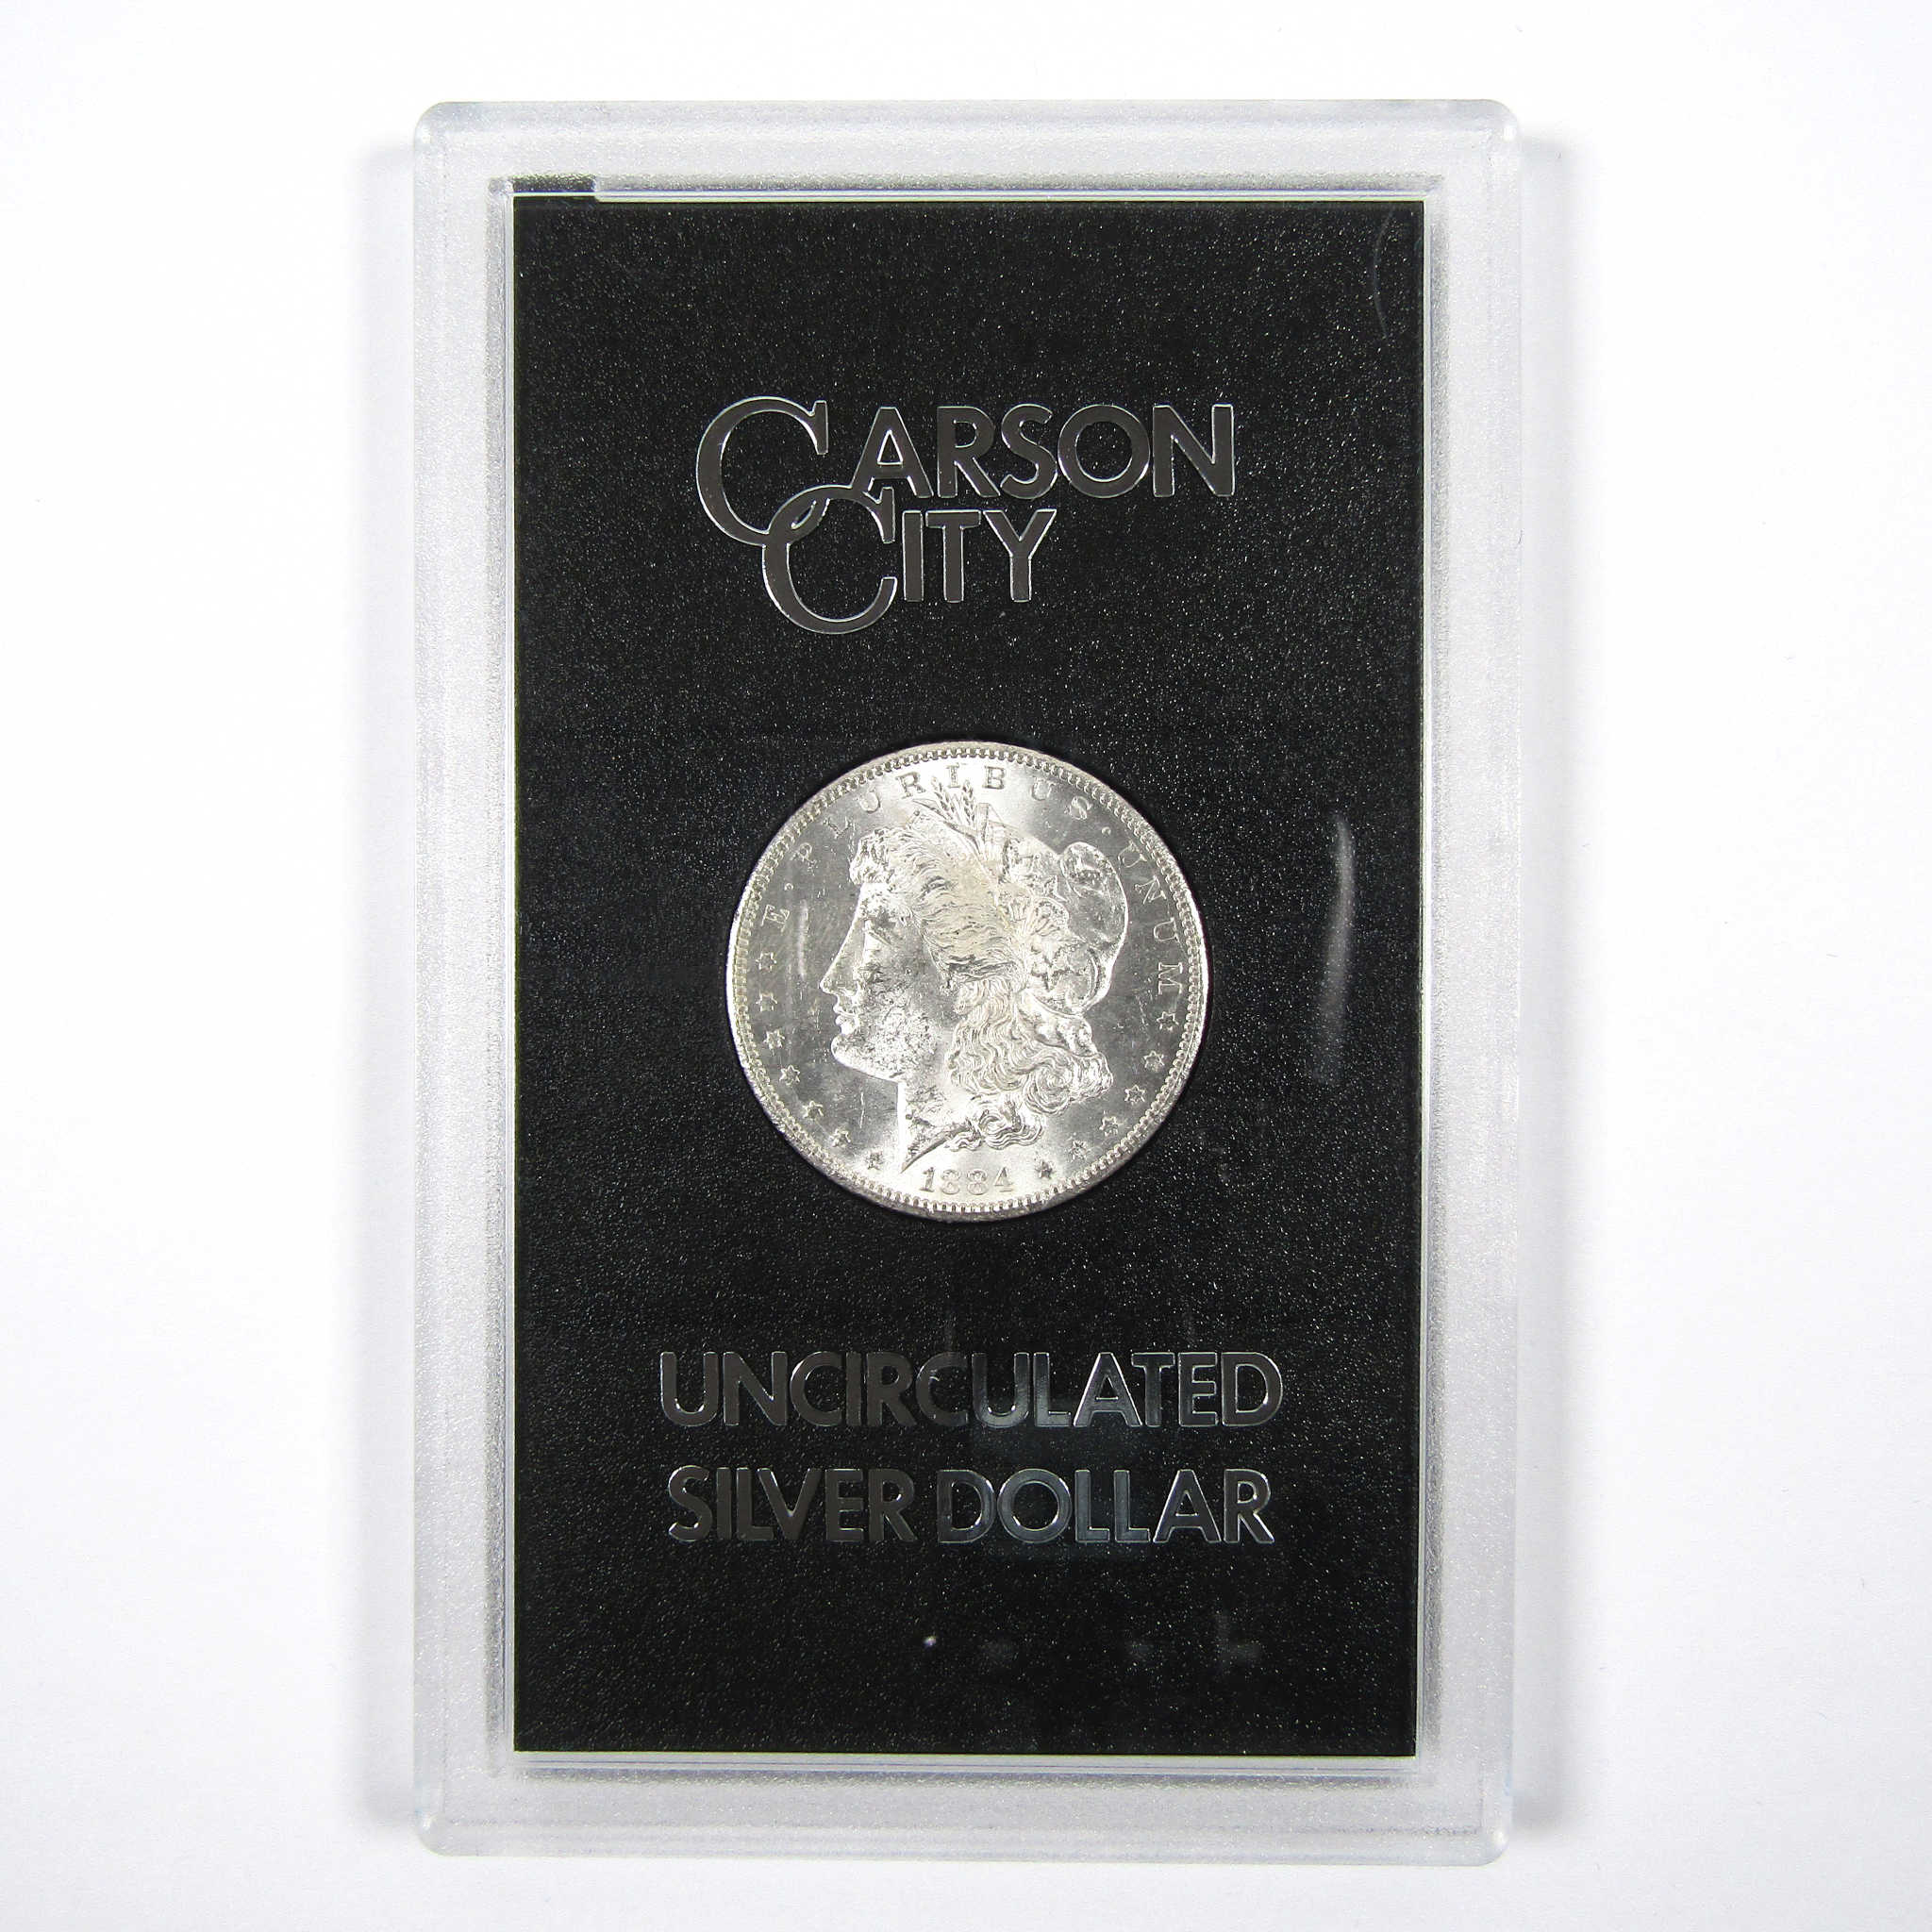 1884 CC GSA Morgan Dollar BU Uncirculated Silver $1 Coin SKU:CPC4439 - Morgan coin - Morgan silver dollar - Morgan silver dollar for sale - Profile Coins &amp; Collectibles